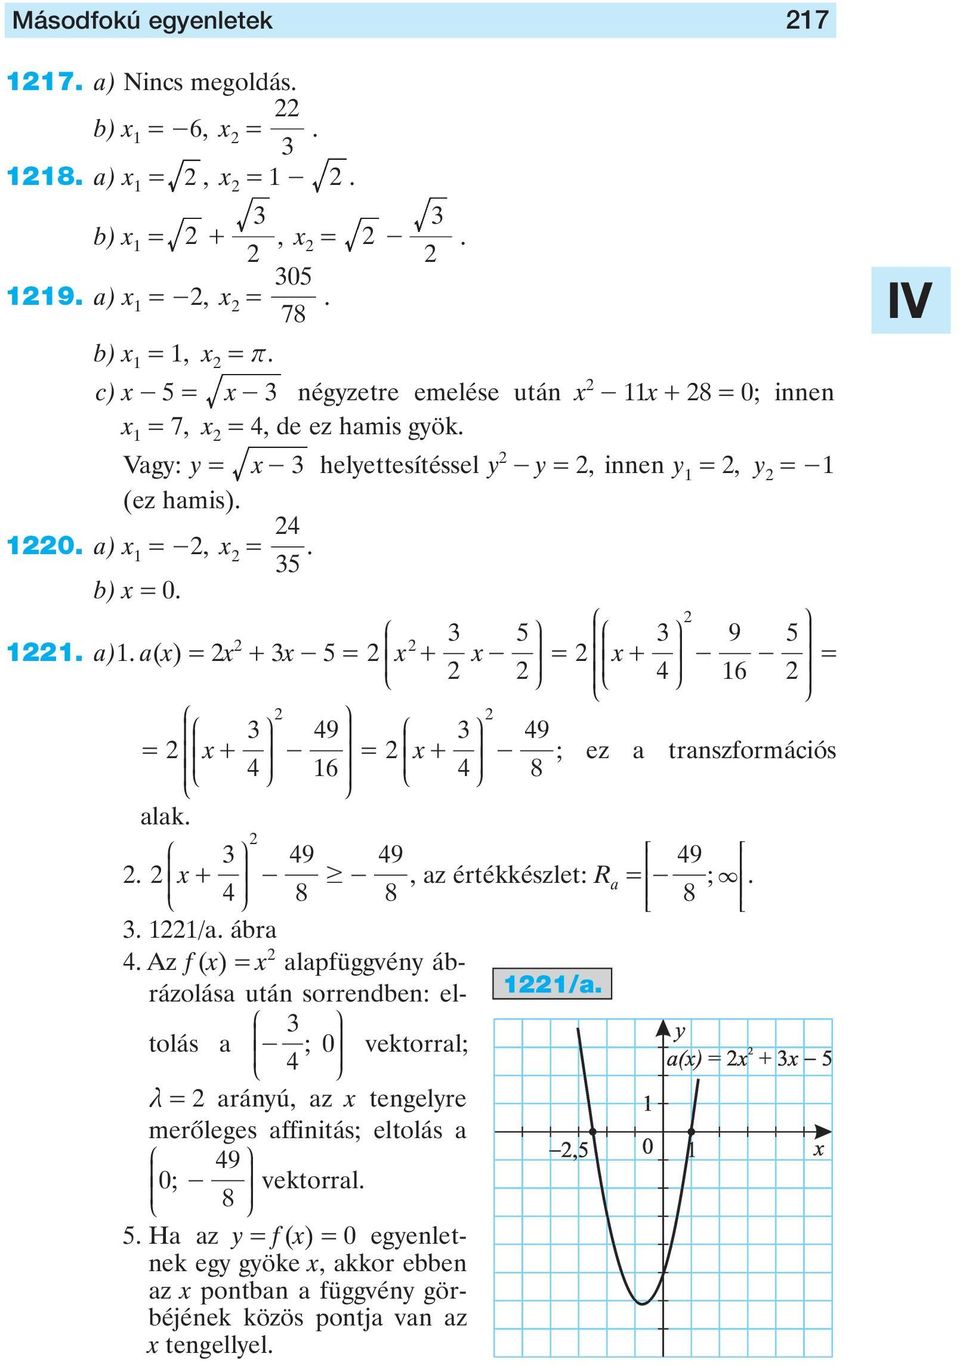 J N R R 49 49. x + S 49 S - $ - 4 O, z értékkészlet: R 8 8 - ; S 8 S. T T. /. ábr 4. Az f (x) x lpfüggvény ábrázolás után sorrendben: eltolás - ; 0 4 O vektorrl; /.